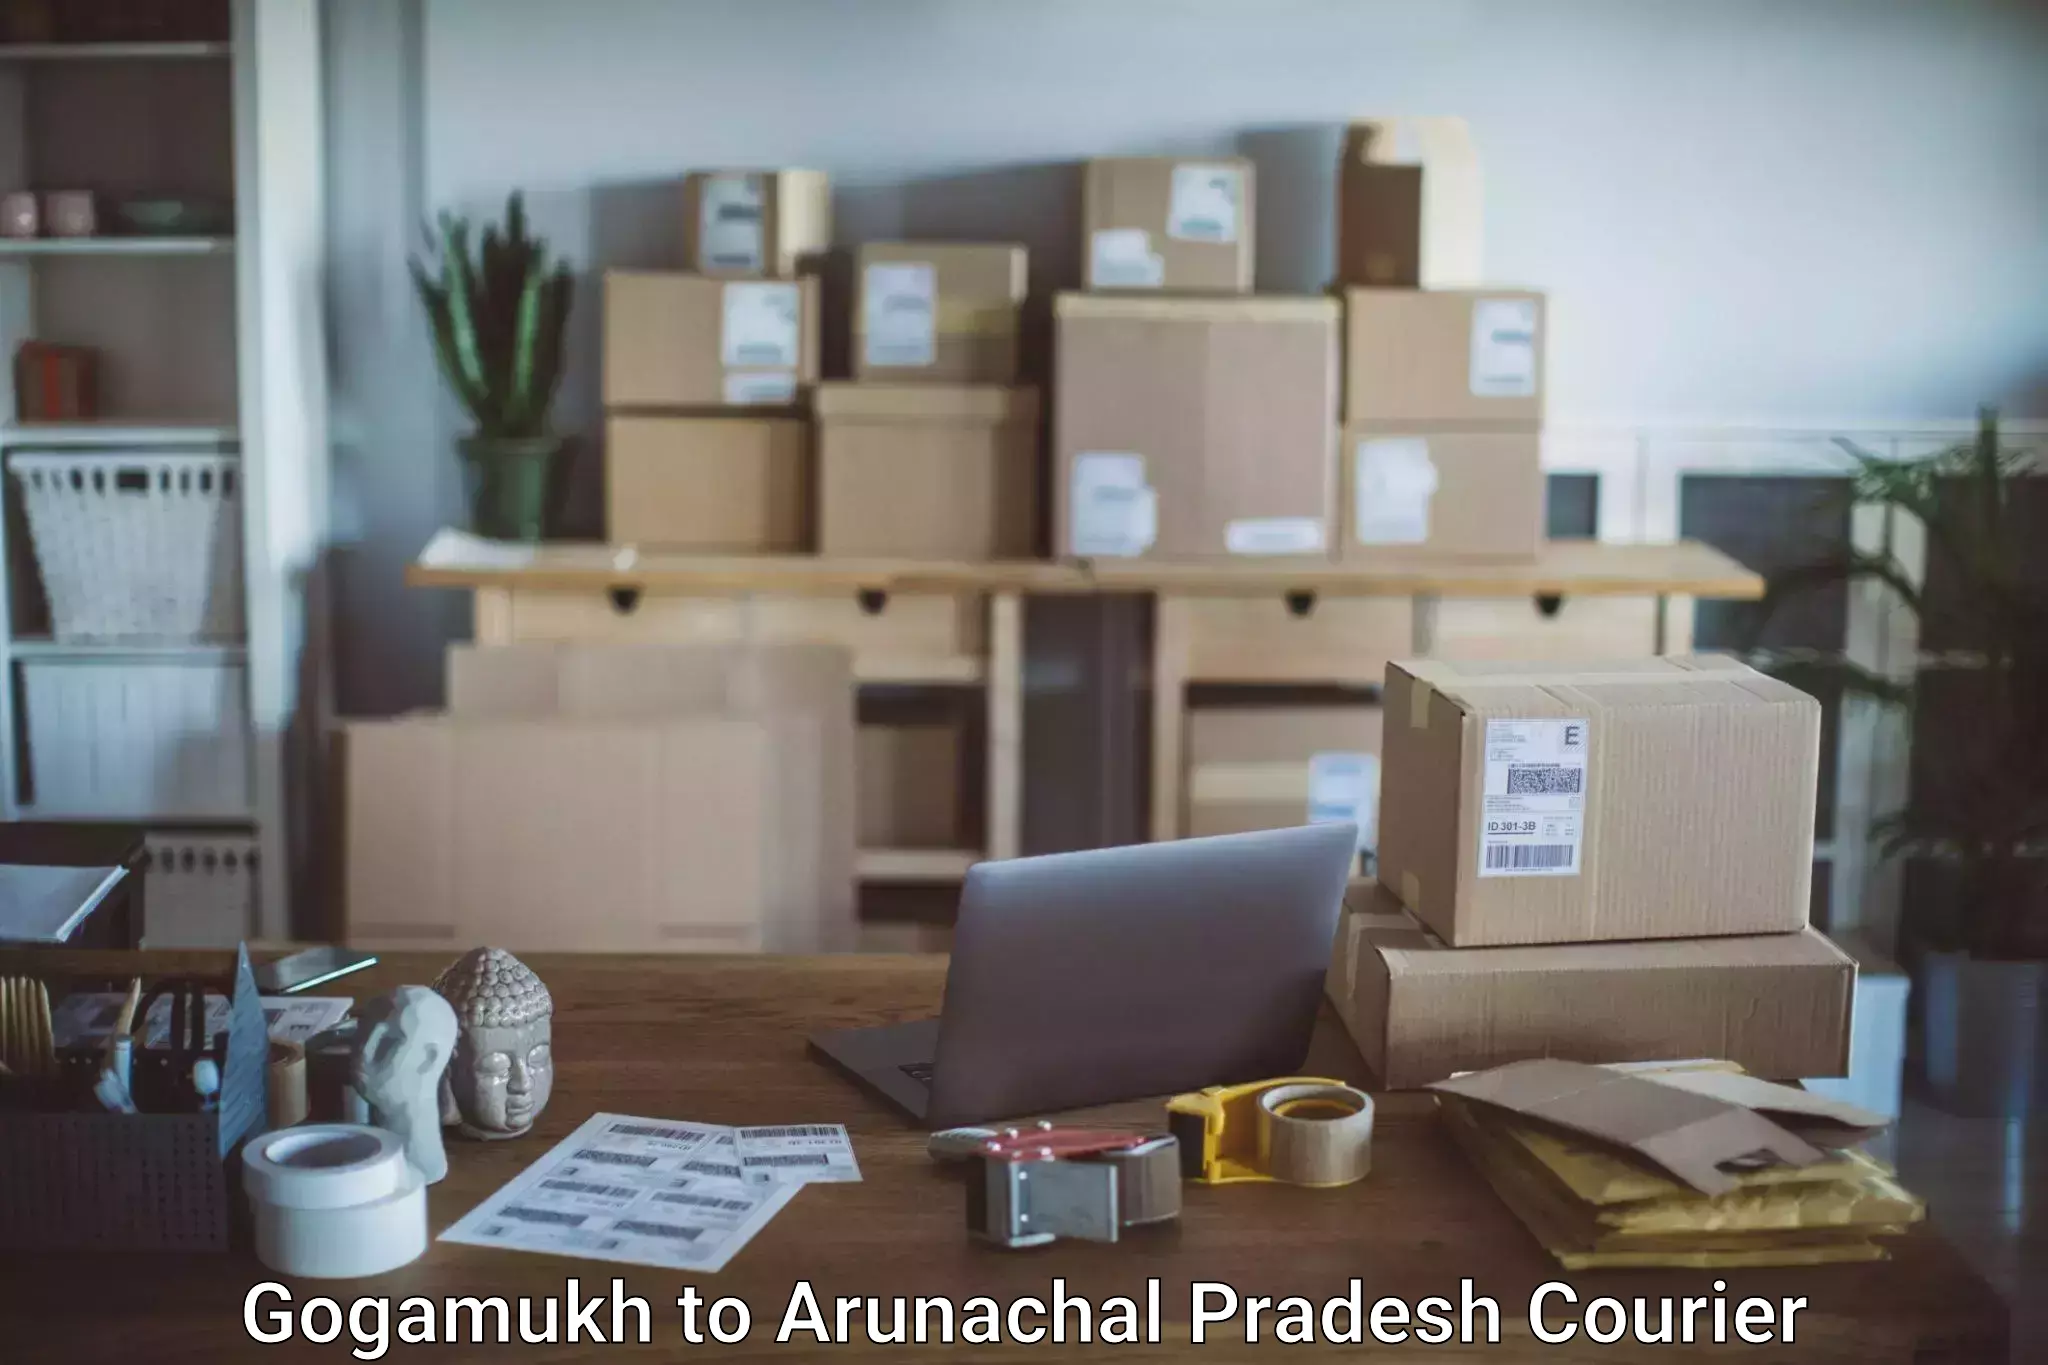 Urgent luggage shipment Gogamukh to Arunachal Pradesh